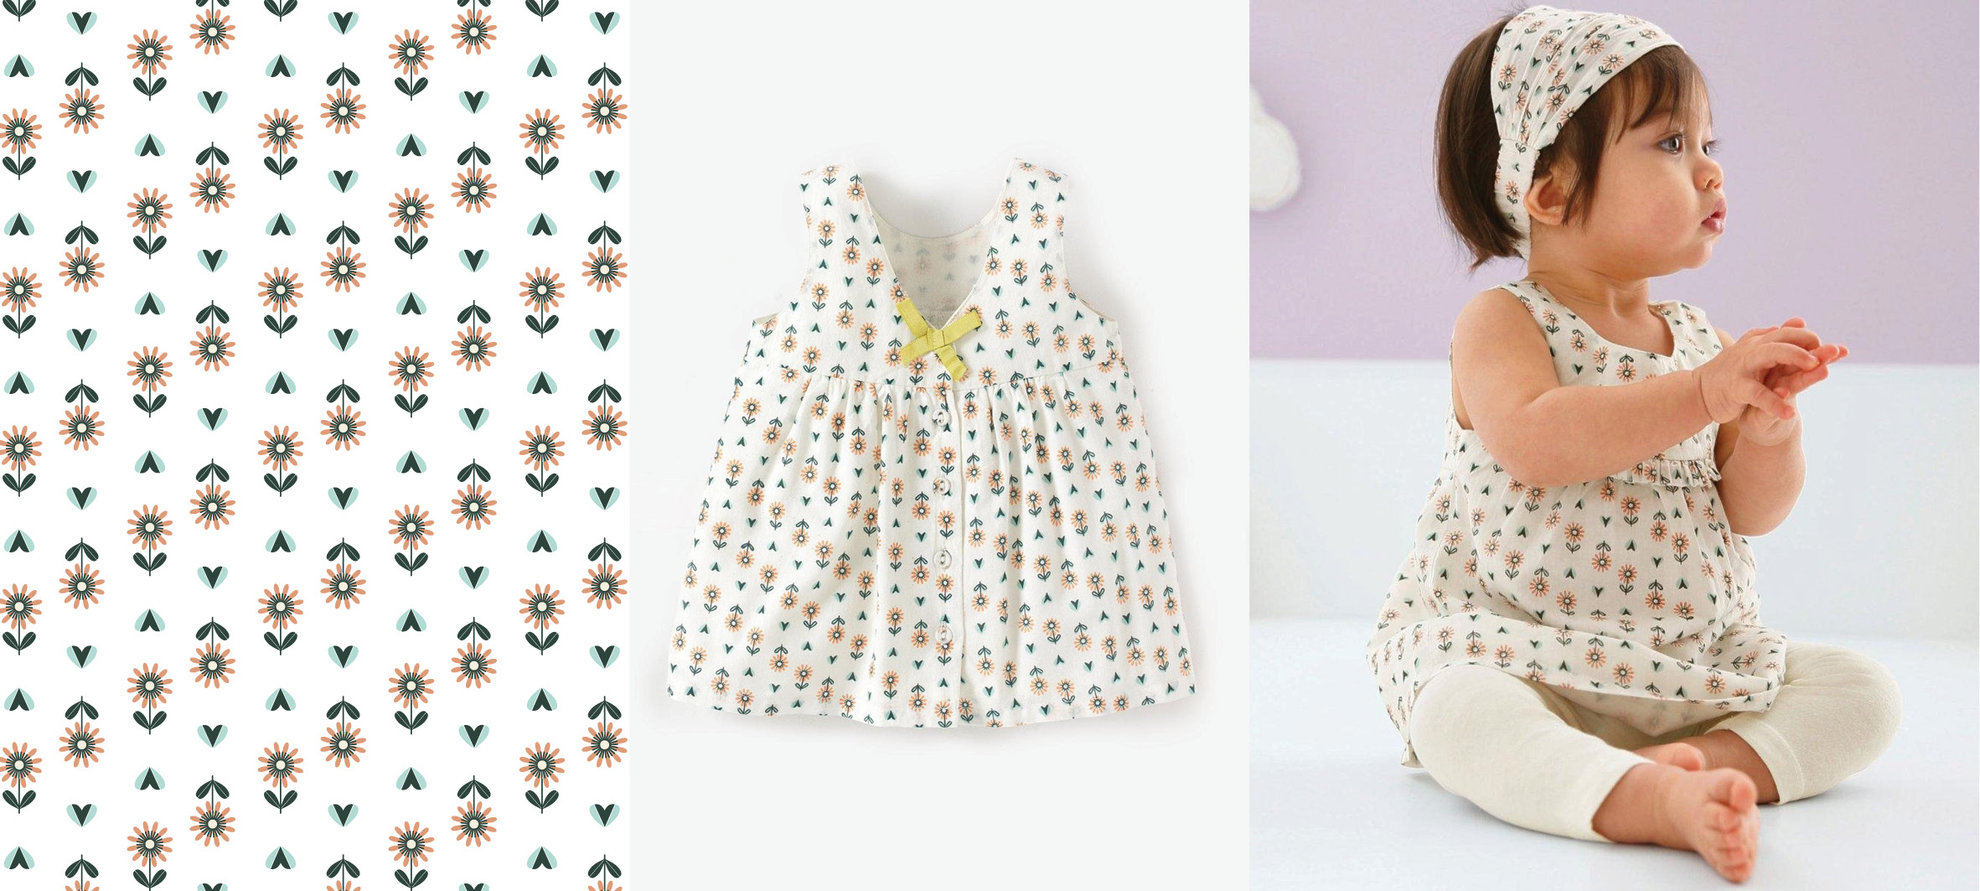 Design textile fleurs pour LaRedoute baby.